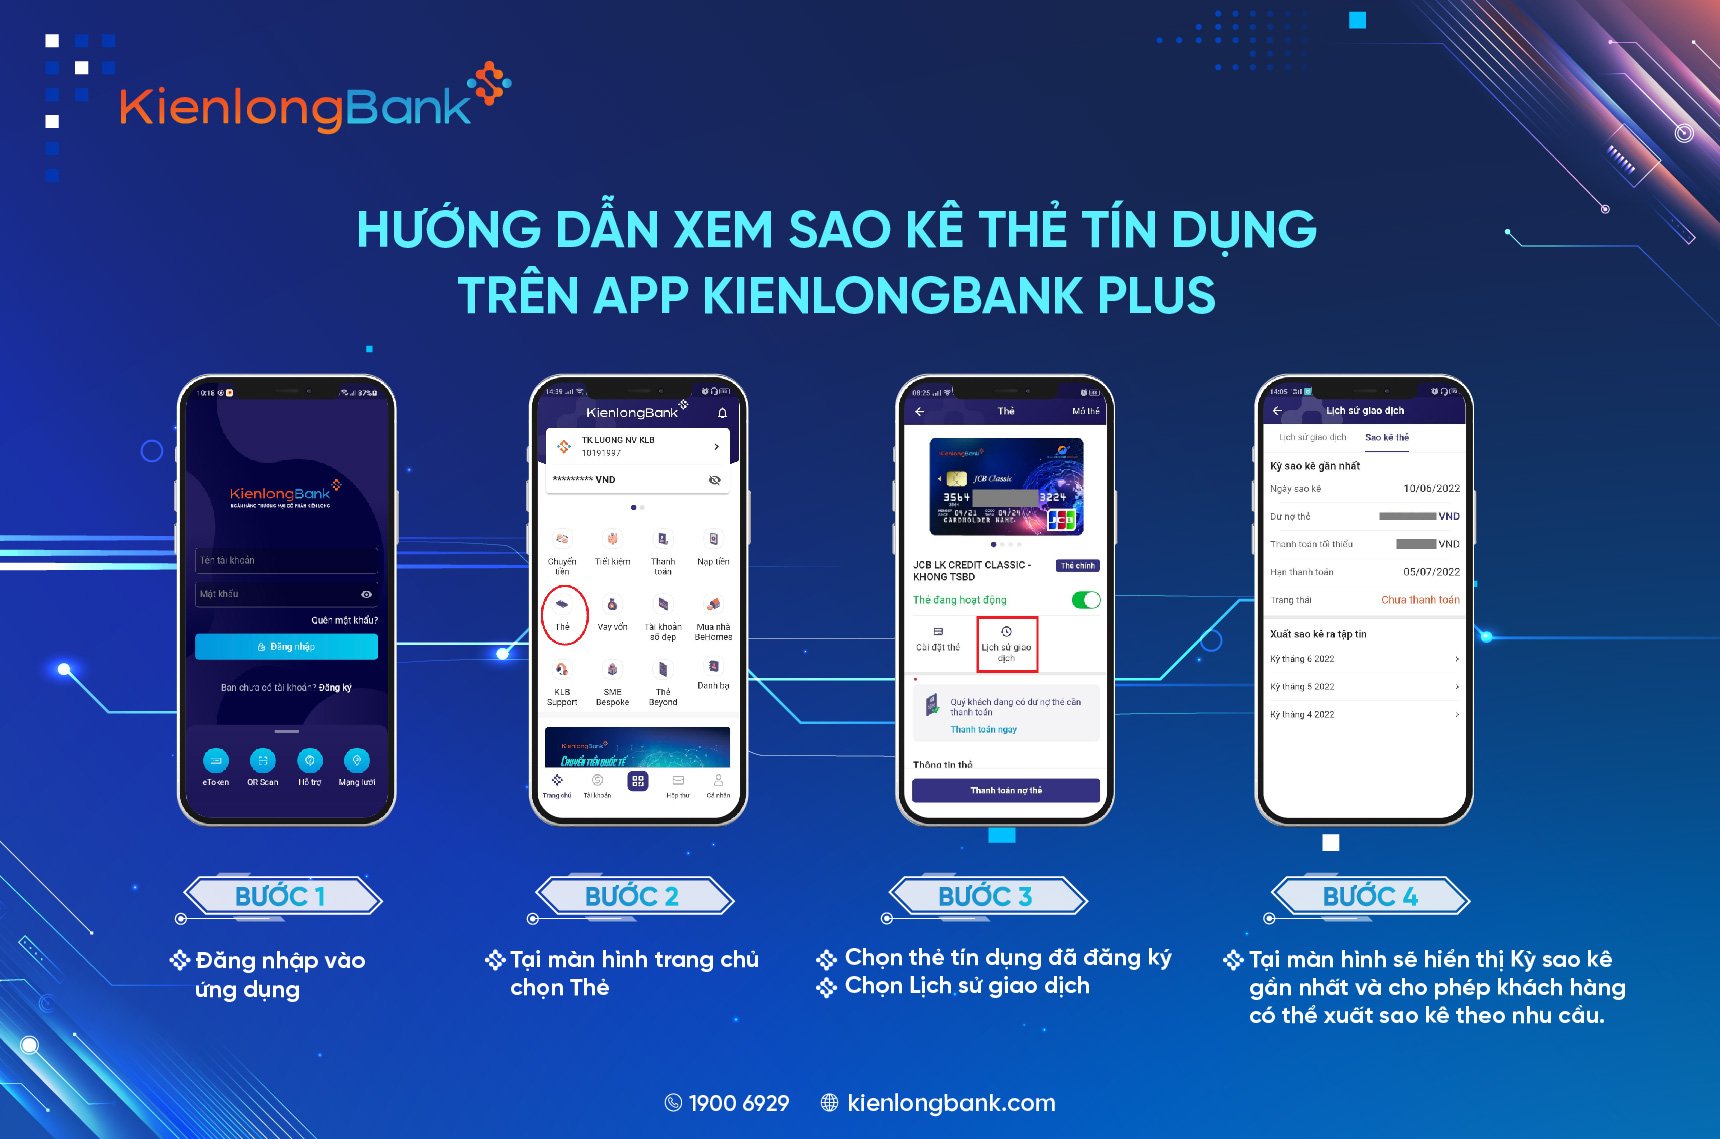 trai-nghiem-cac-tinh-nang-the-tren-app-kienlongbank-plus